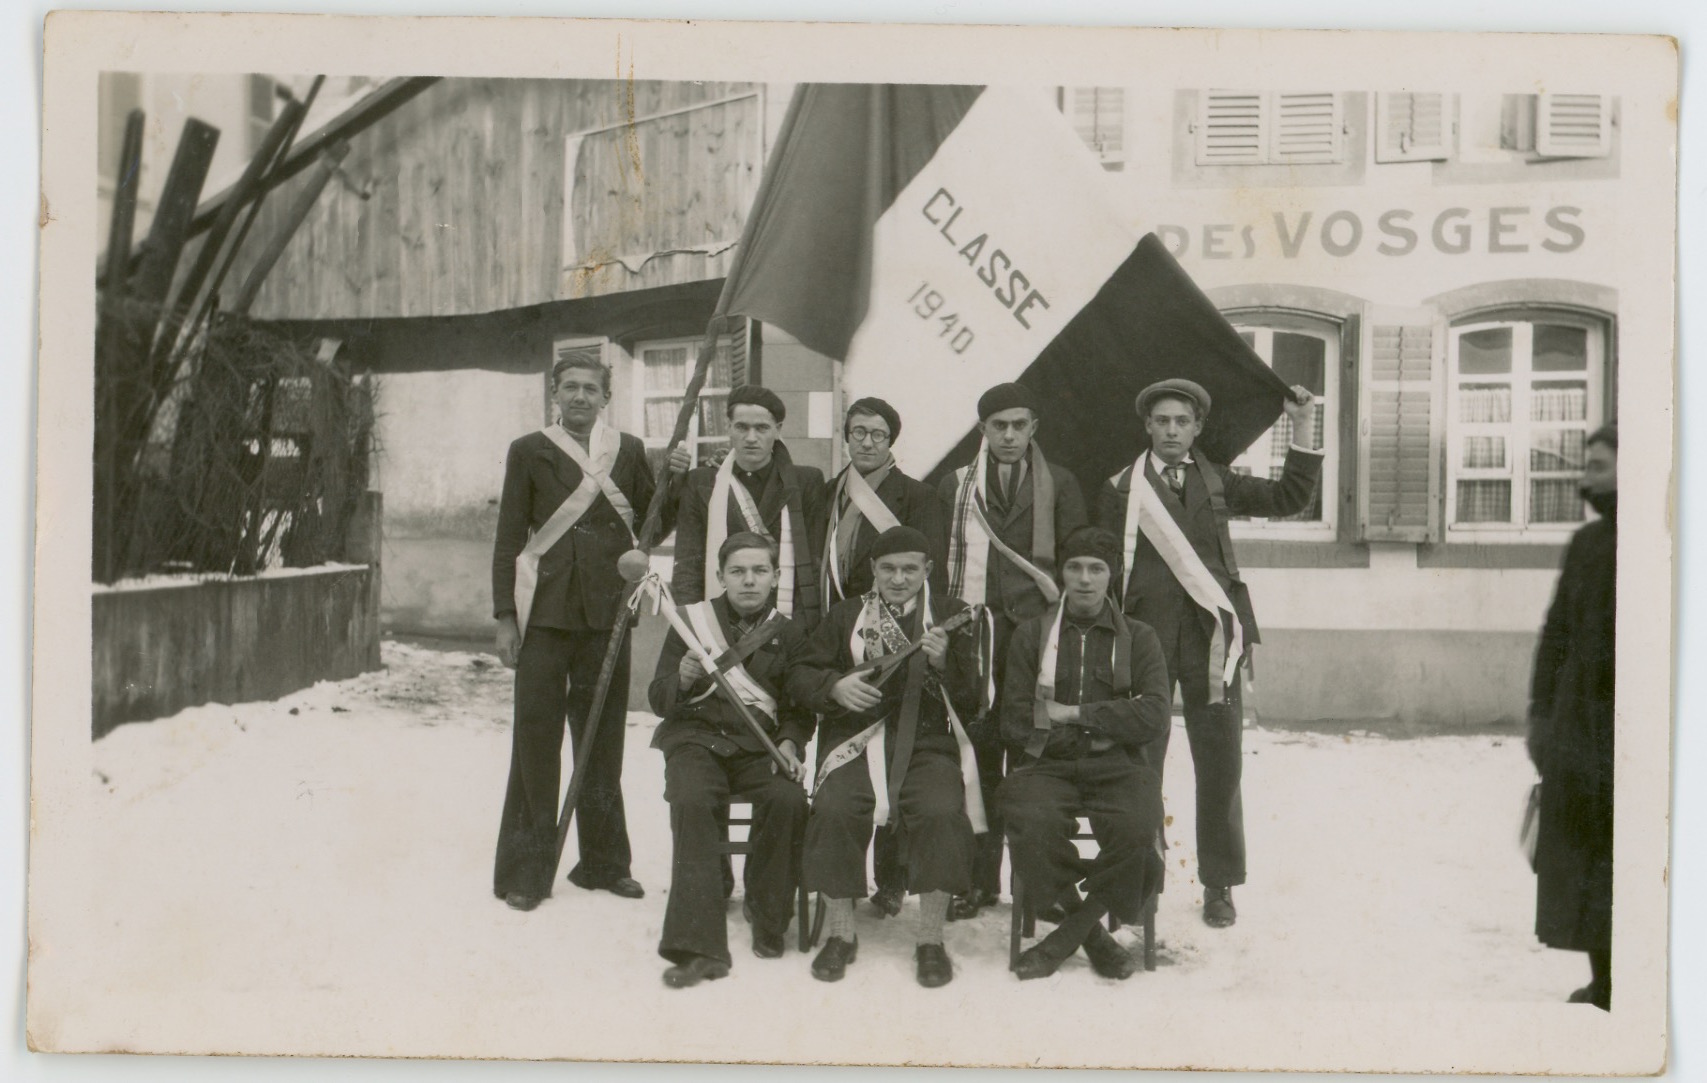 2 Carte Photo papier originale - Conscription Classe 1940 - Conscrit militaire - Soldat - drapeau - Tirage au sort - Alsacien - Folklore